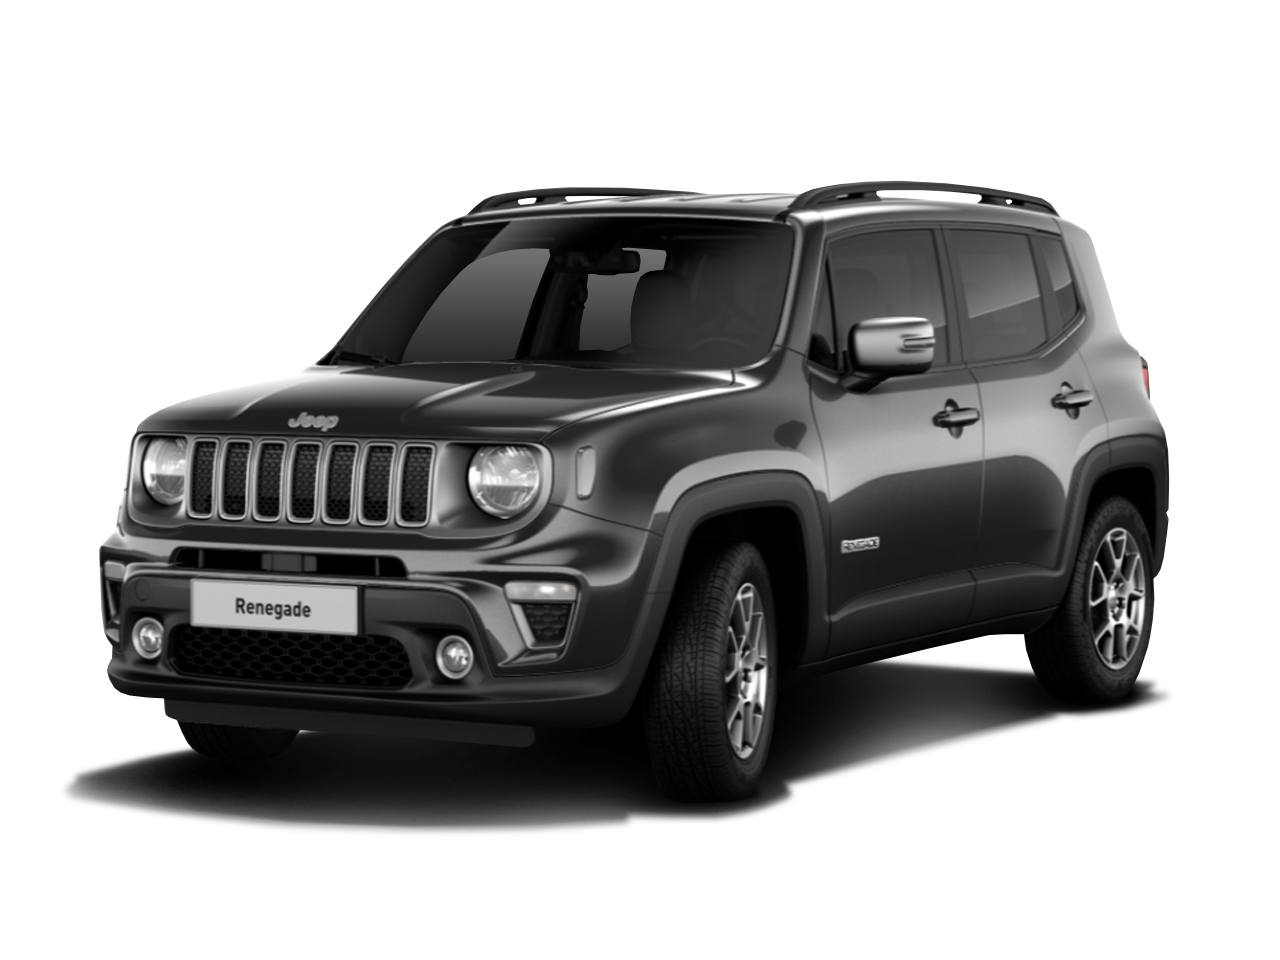 Jeep Renegade für 239,00 € brutto leasen